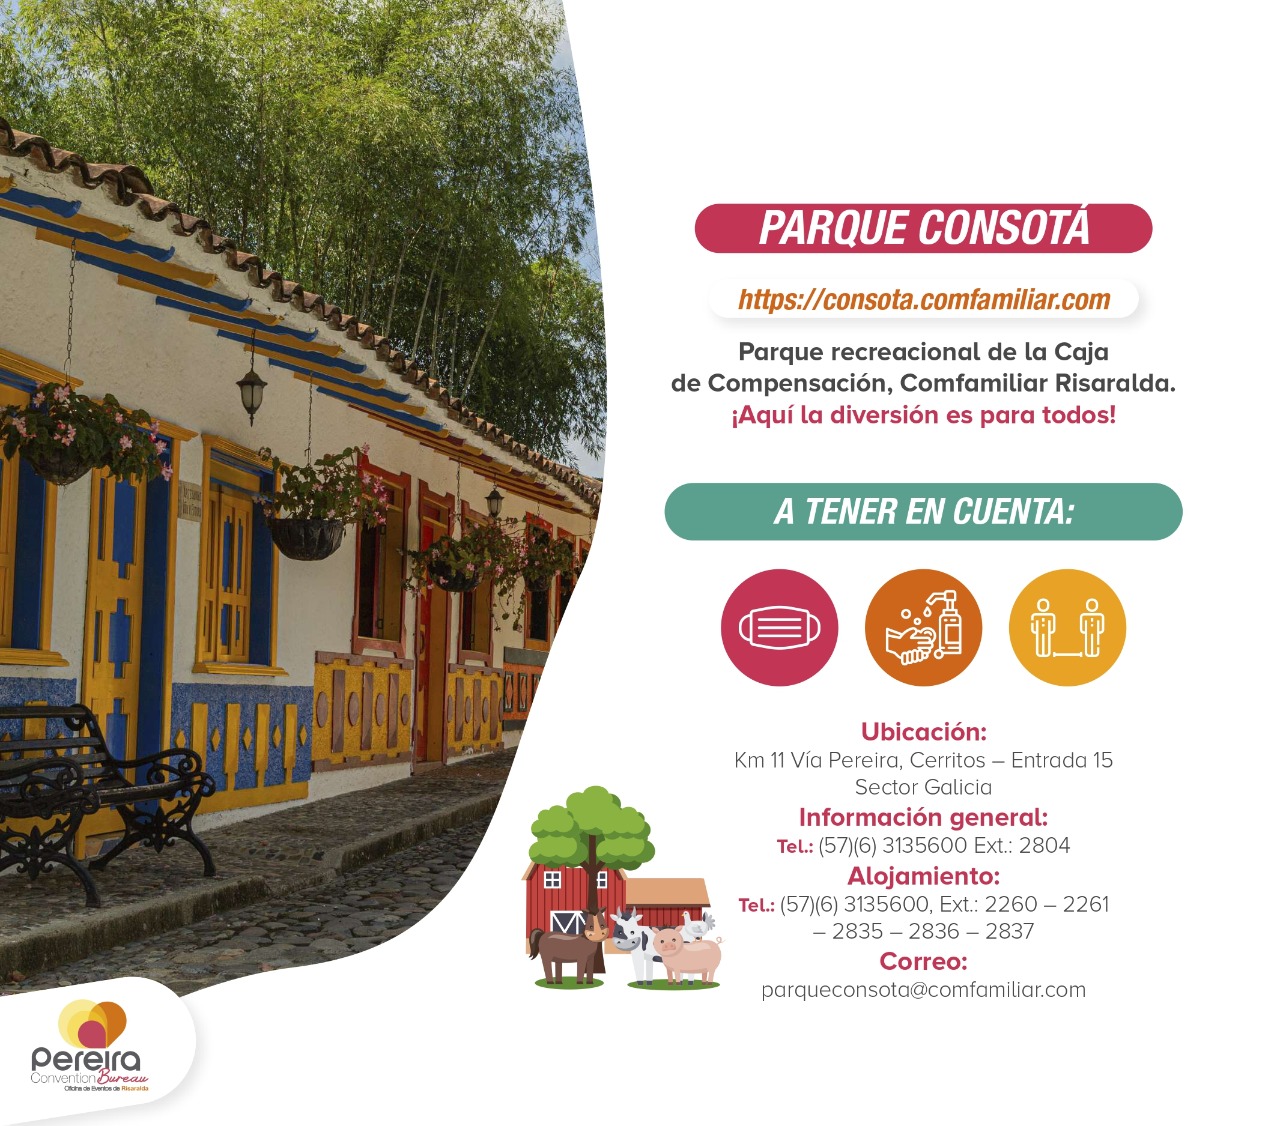 Turismo Seguro en Risaralda-Cámara de comercio de Pereira- Gobernación de Risaralda-Clúster IREC-Pereira